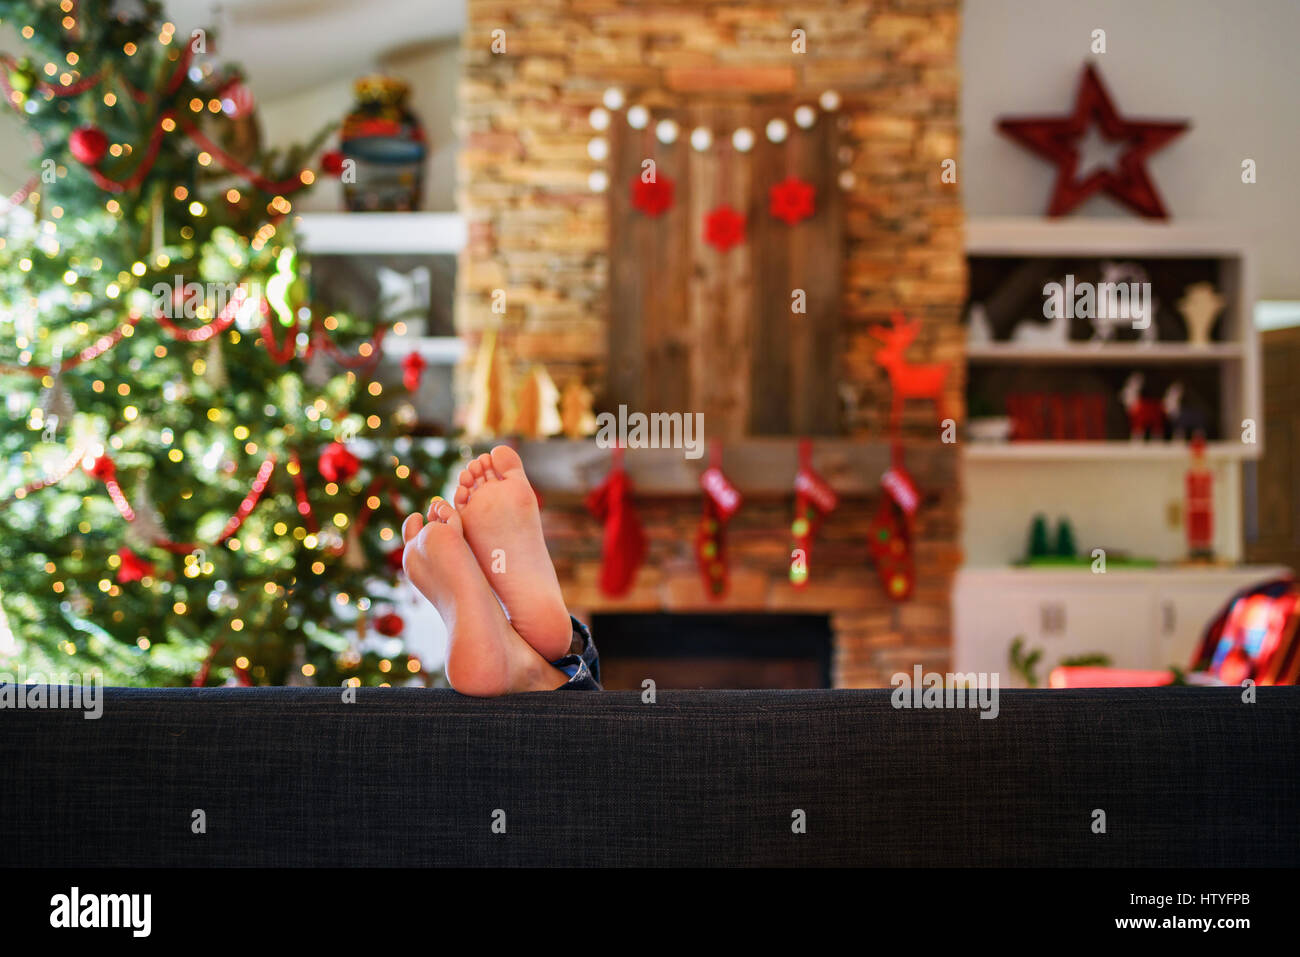 Les pieds de la jeune fille sur un canapé dans la salle de séjour à Noël Banque D'Images